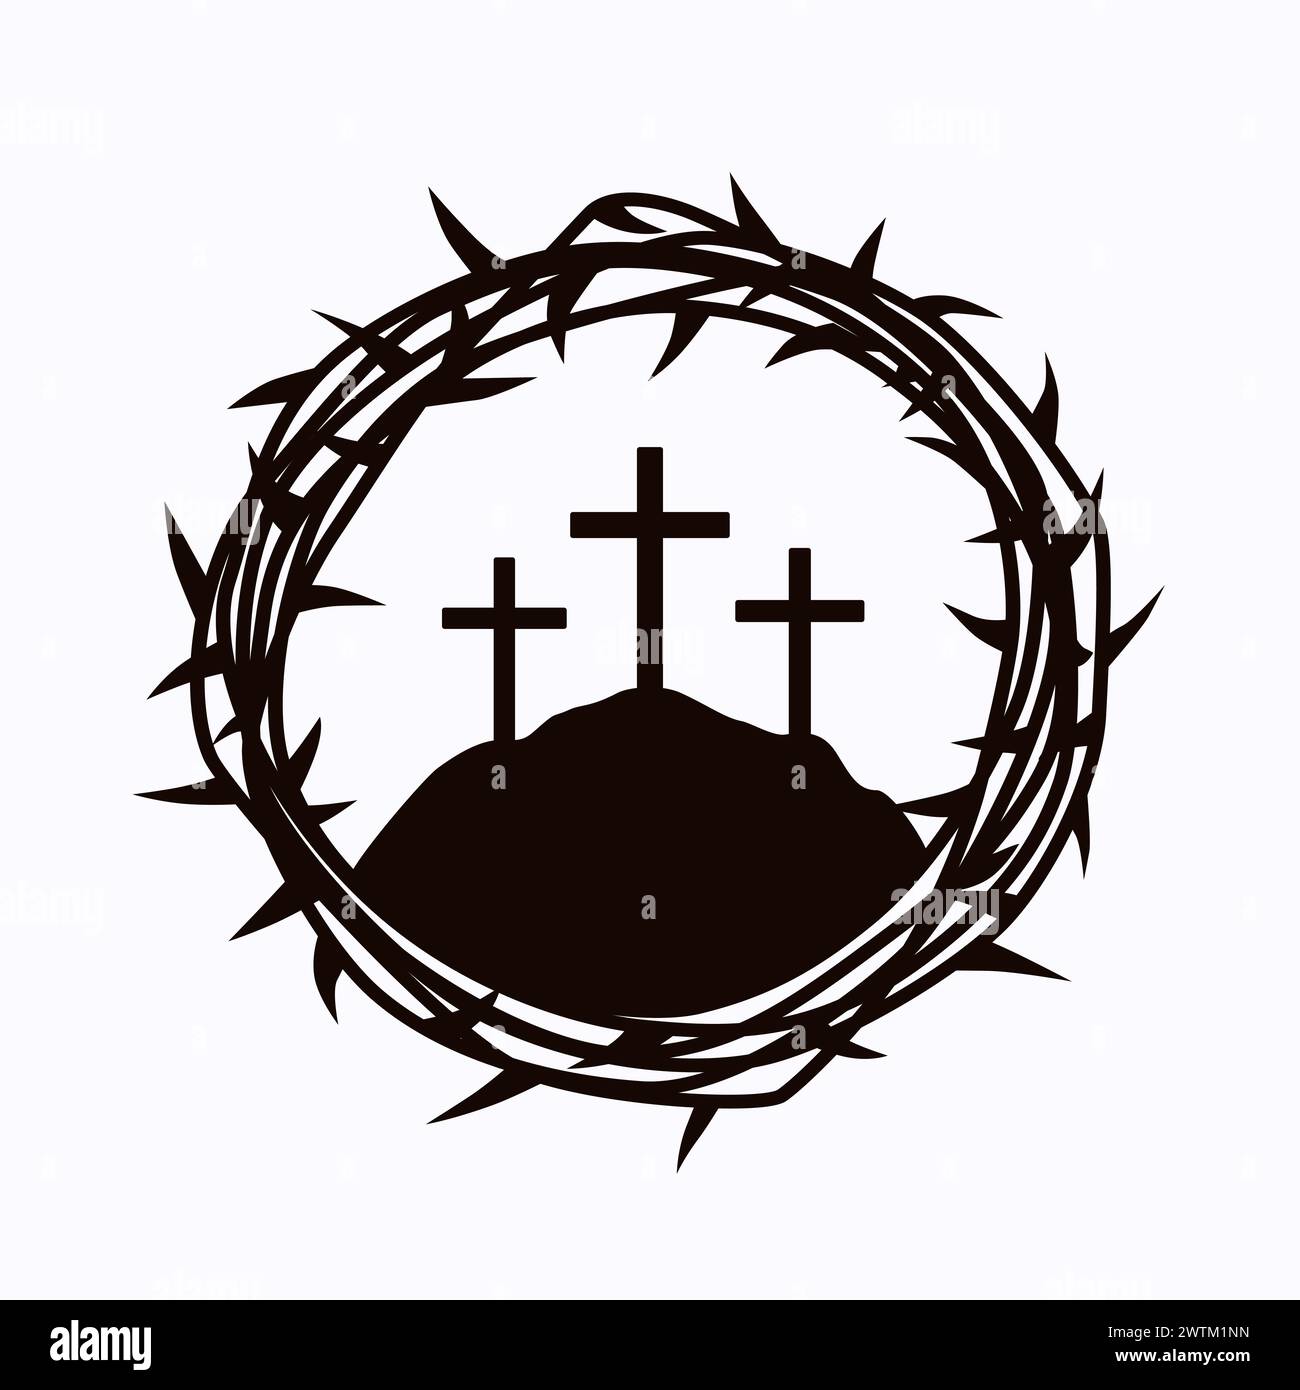 Das Kreuz Jesu Christi, Dornenkrone und Kalvaria. Vektor-Illustration für Ostersonntag Flyer, Poster oder Kirche Banner Design Stock Vektor